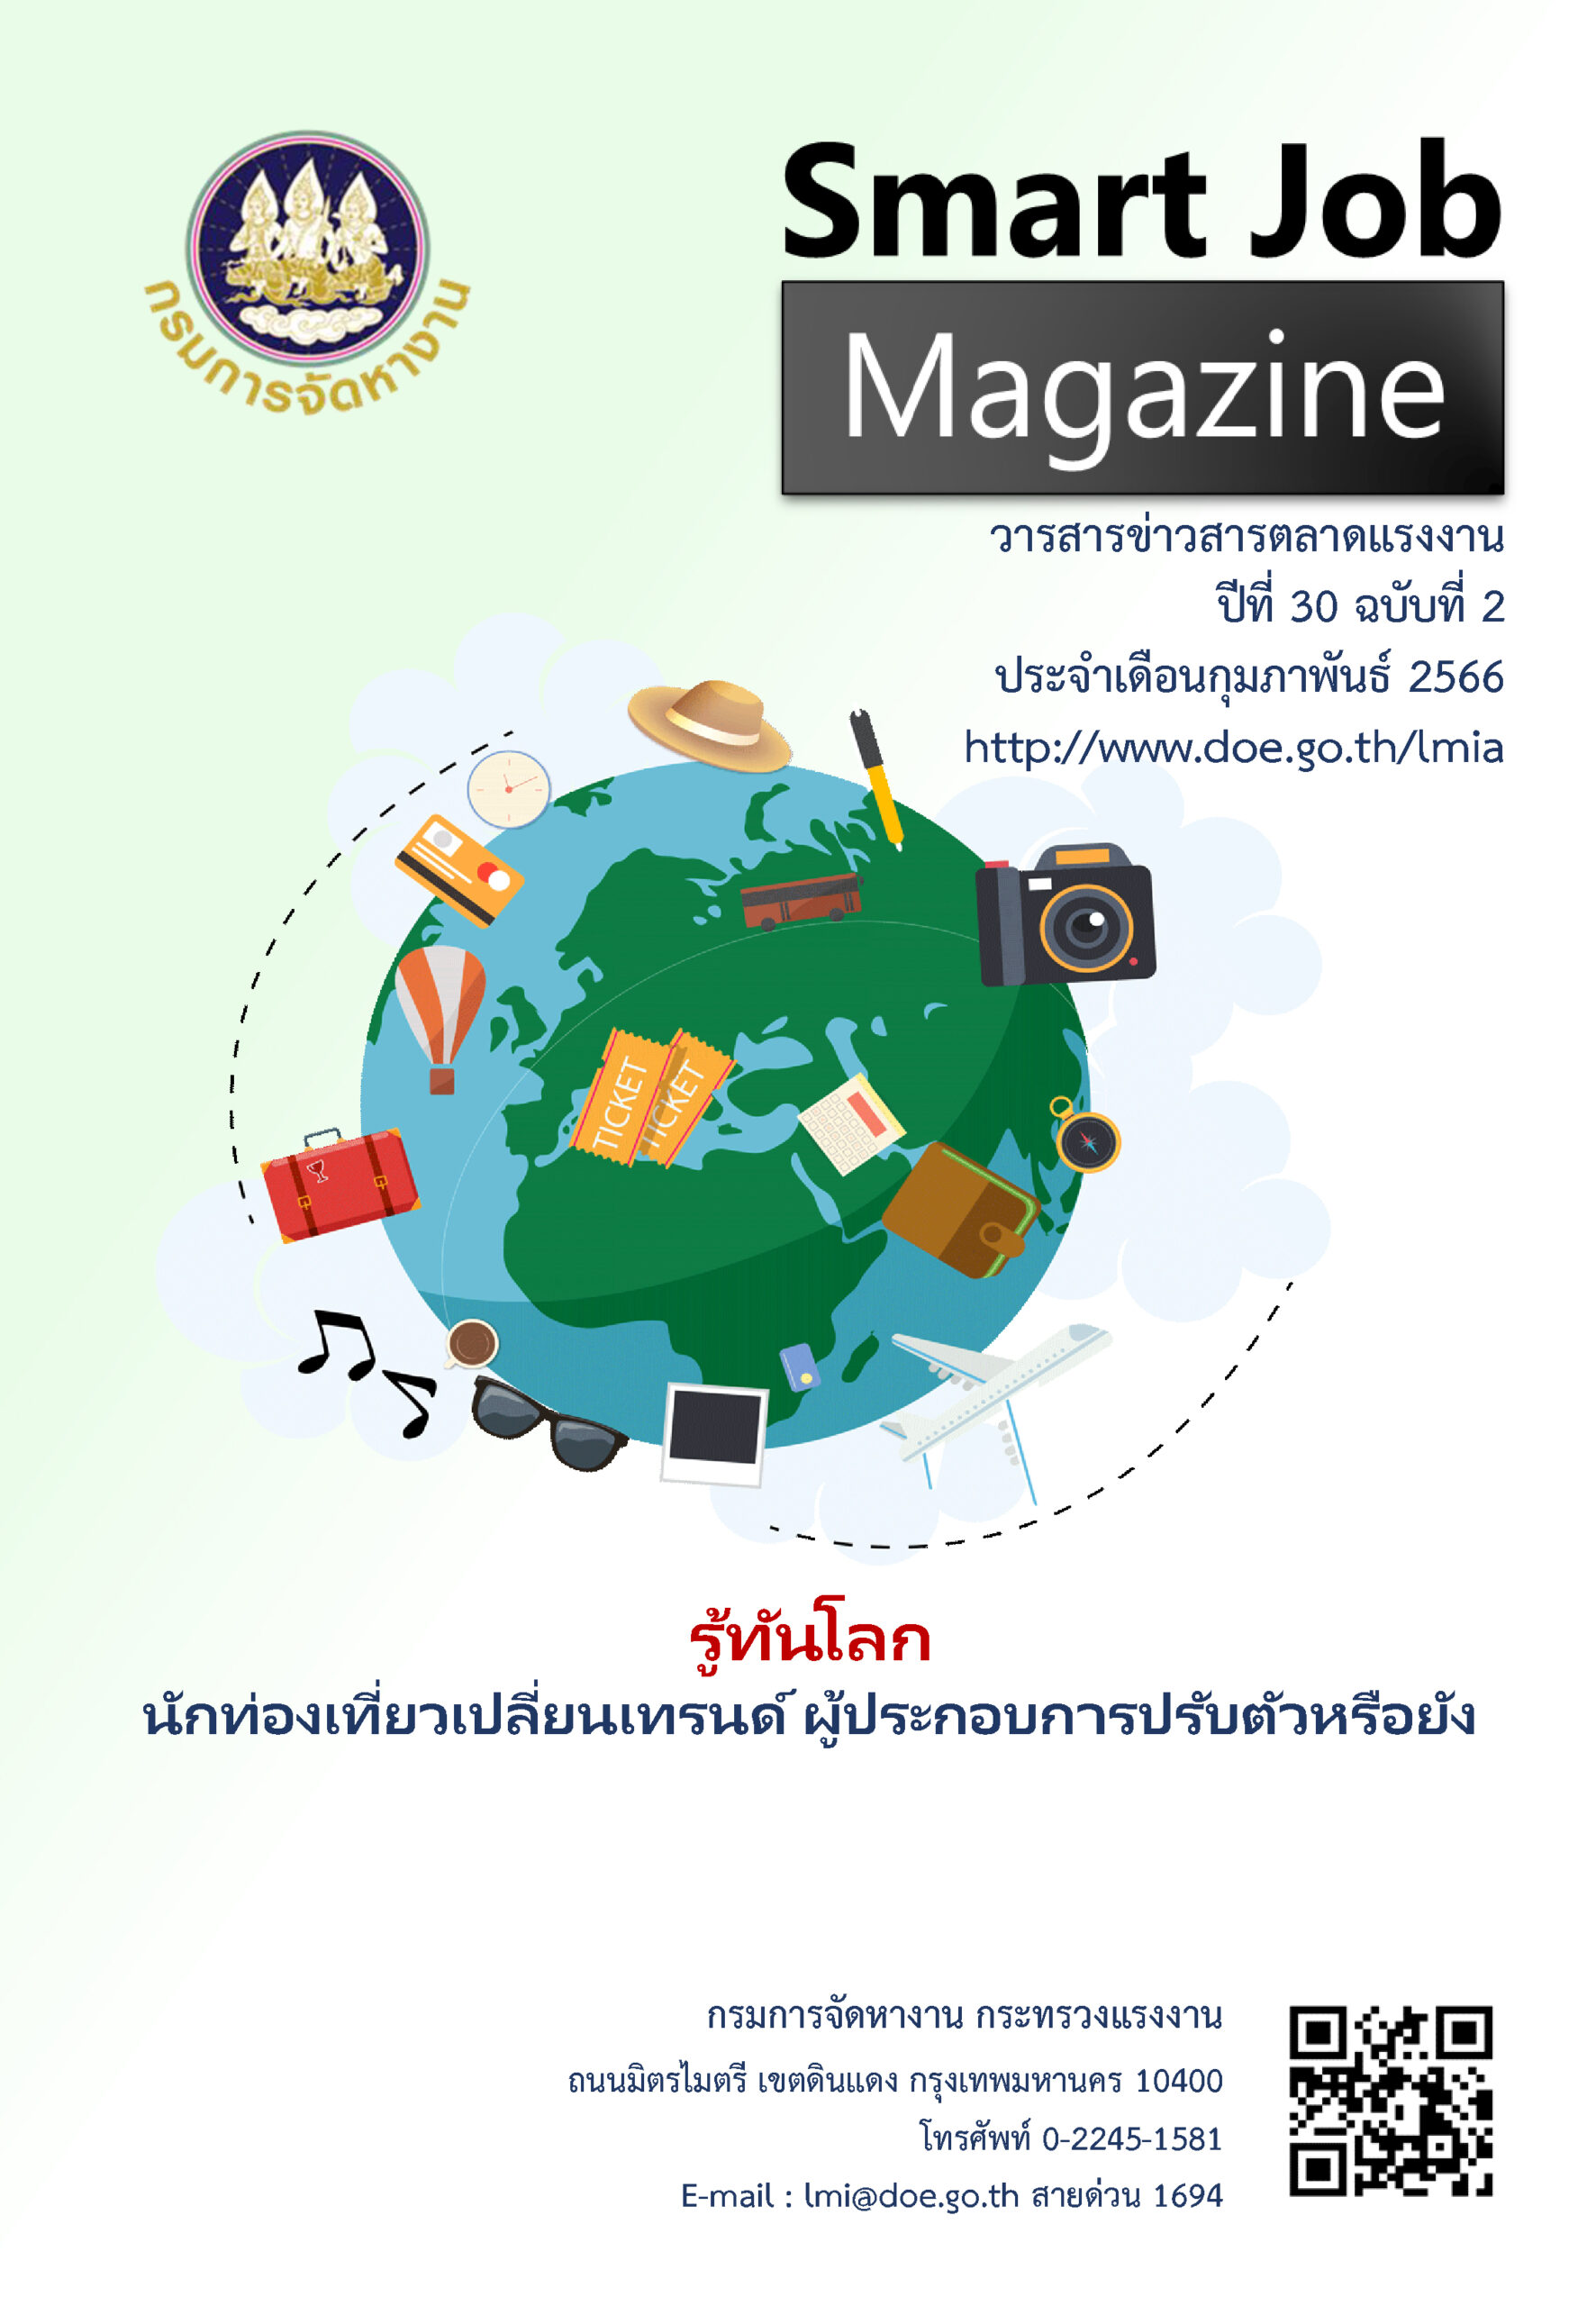 วารสารข่าวสารตลาดแรงงานภาคใต้ Smart Job Magazine ประจำเดือนกุมภาพันธ์ 2566